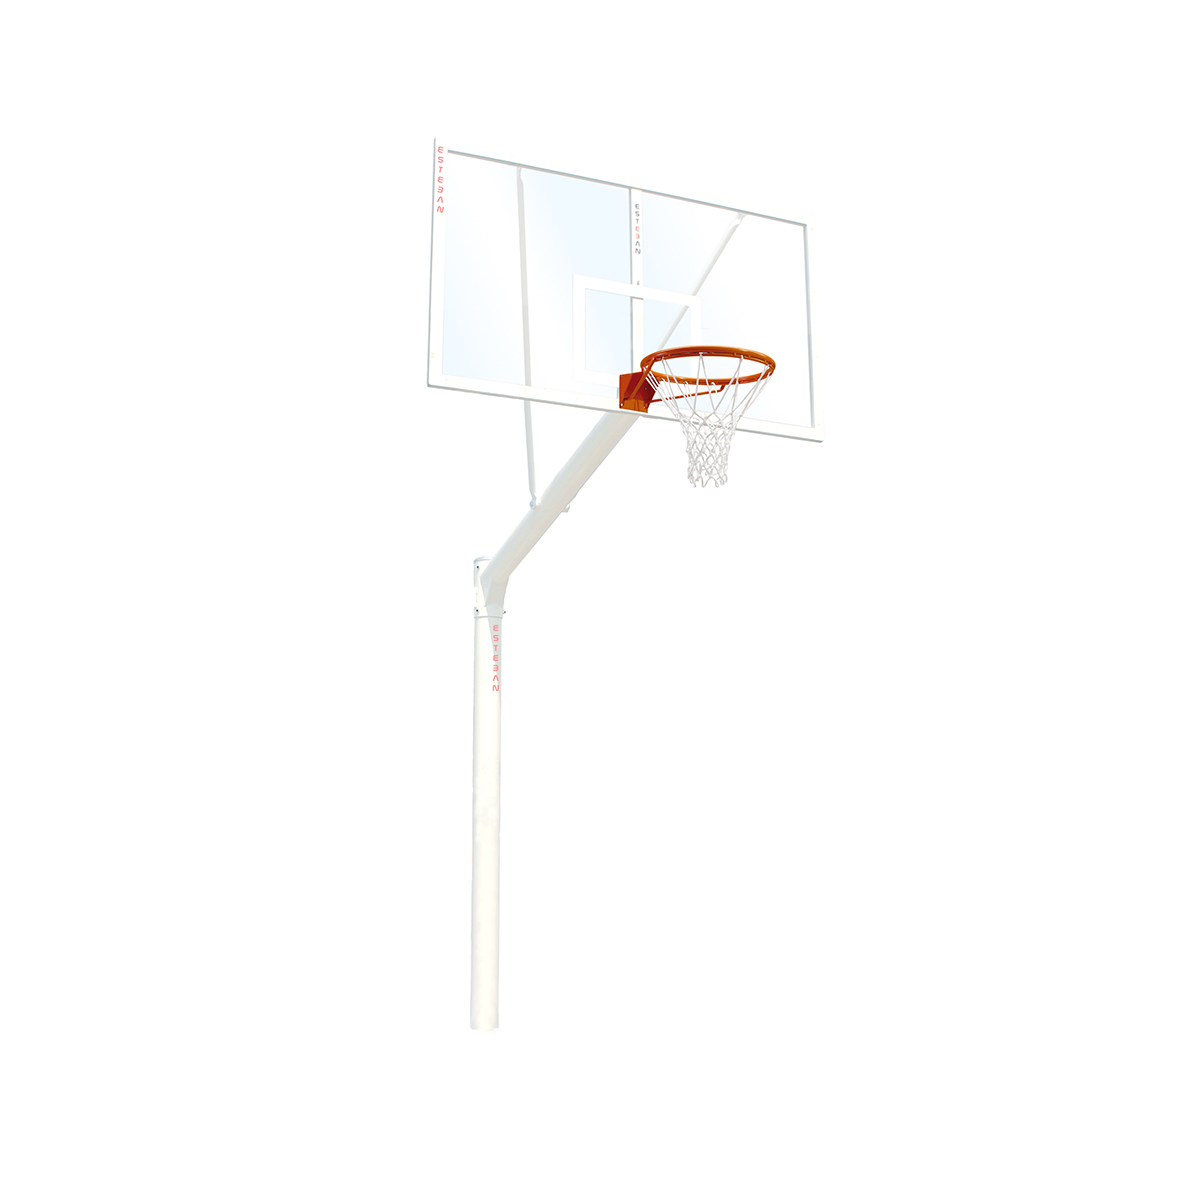 Canasta baloncesto fija tablero metacrilato incoloro extensión 165 cm  BF16521-1 - ESTEBAN SG&E